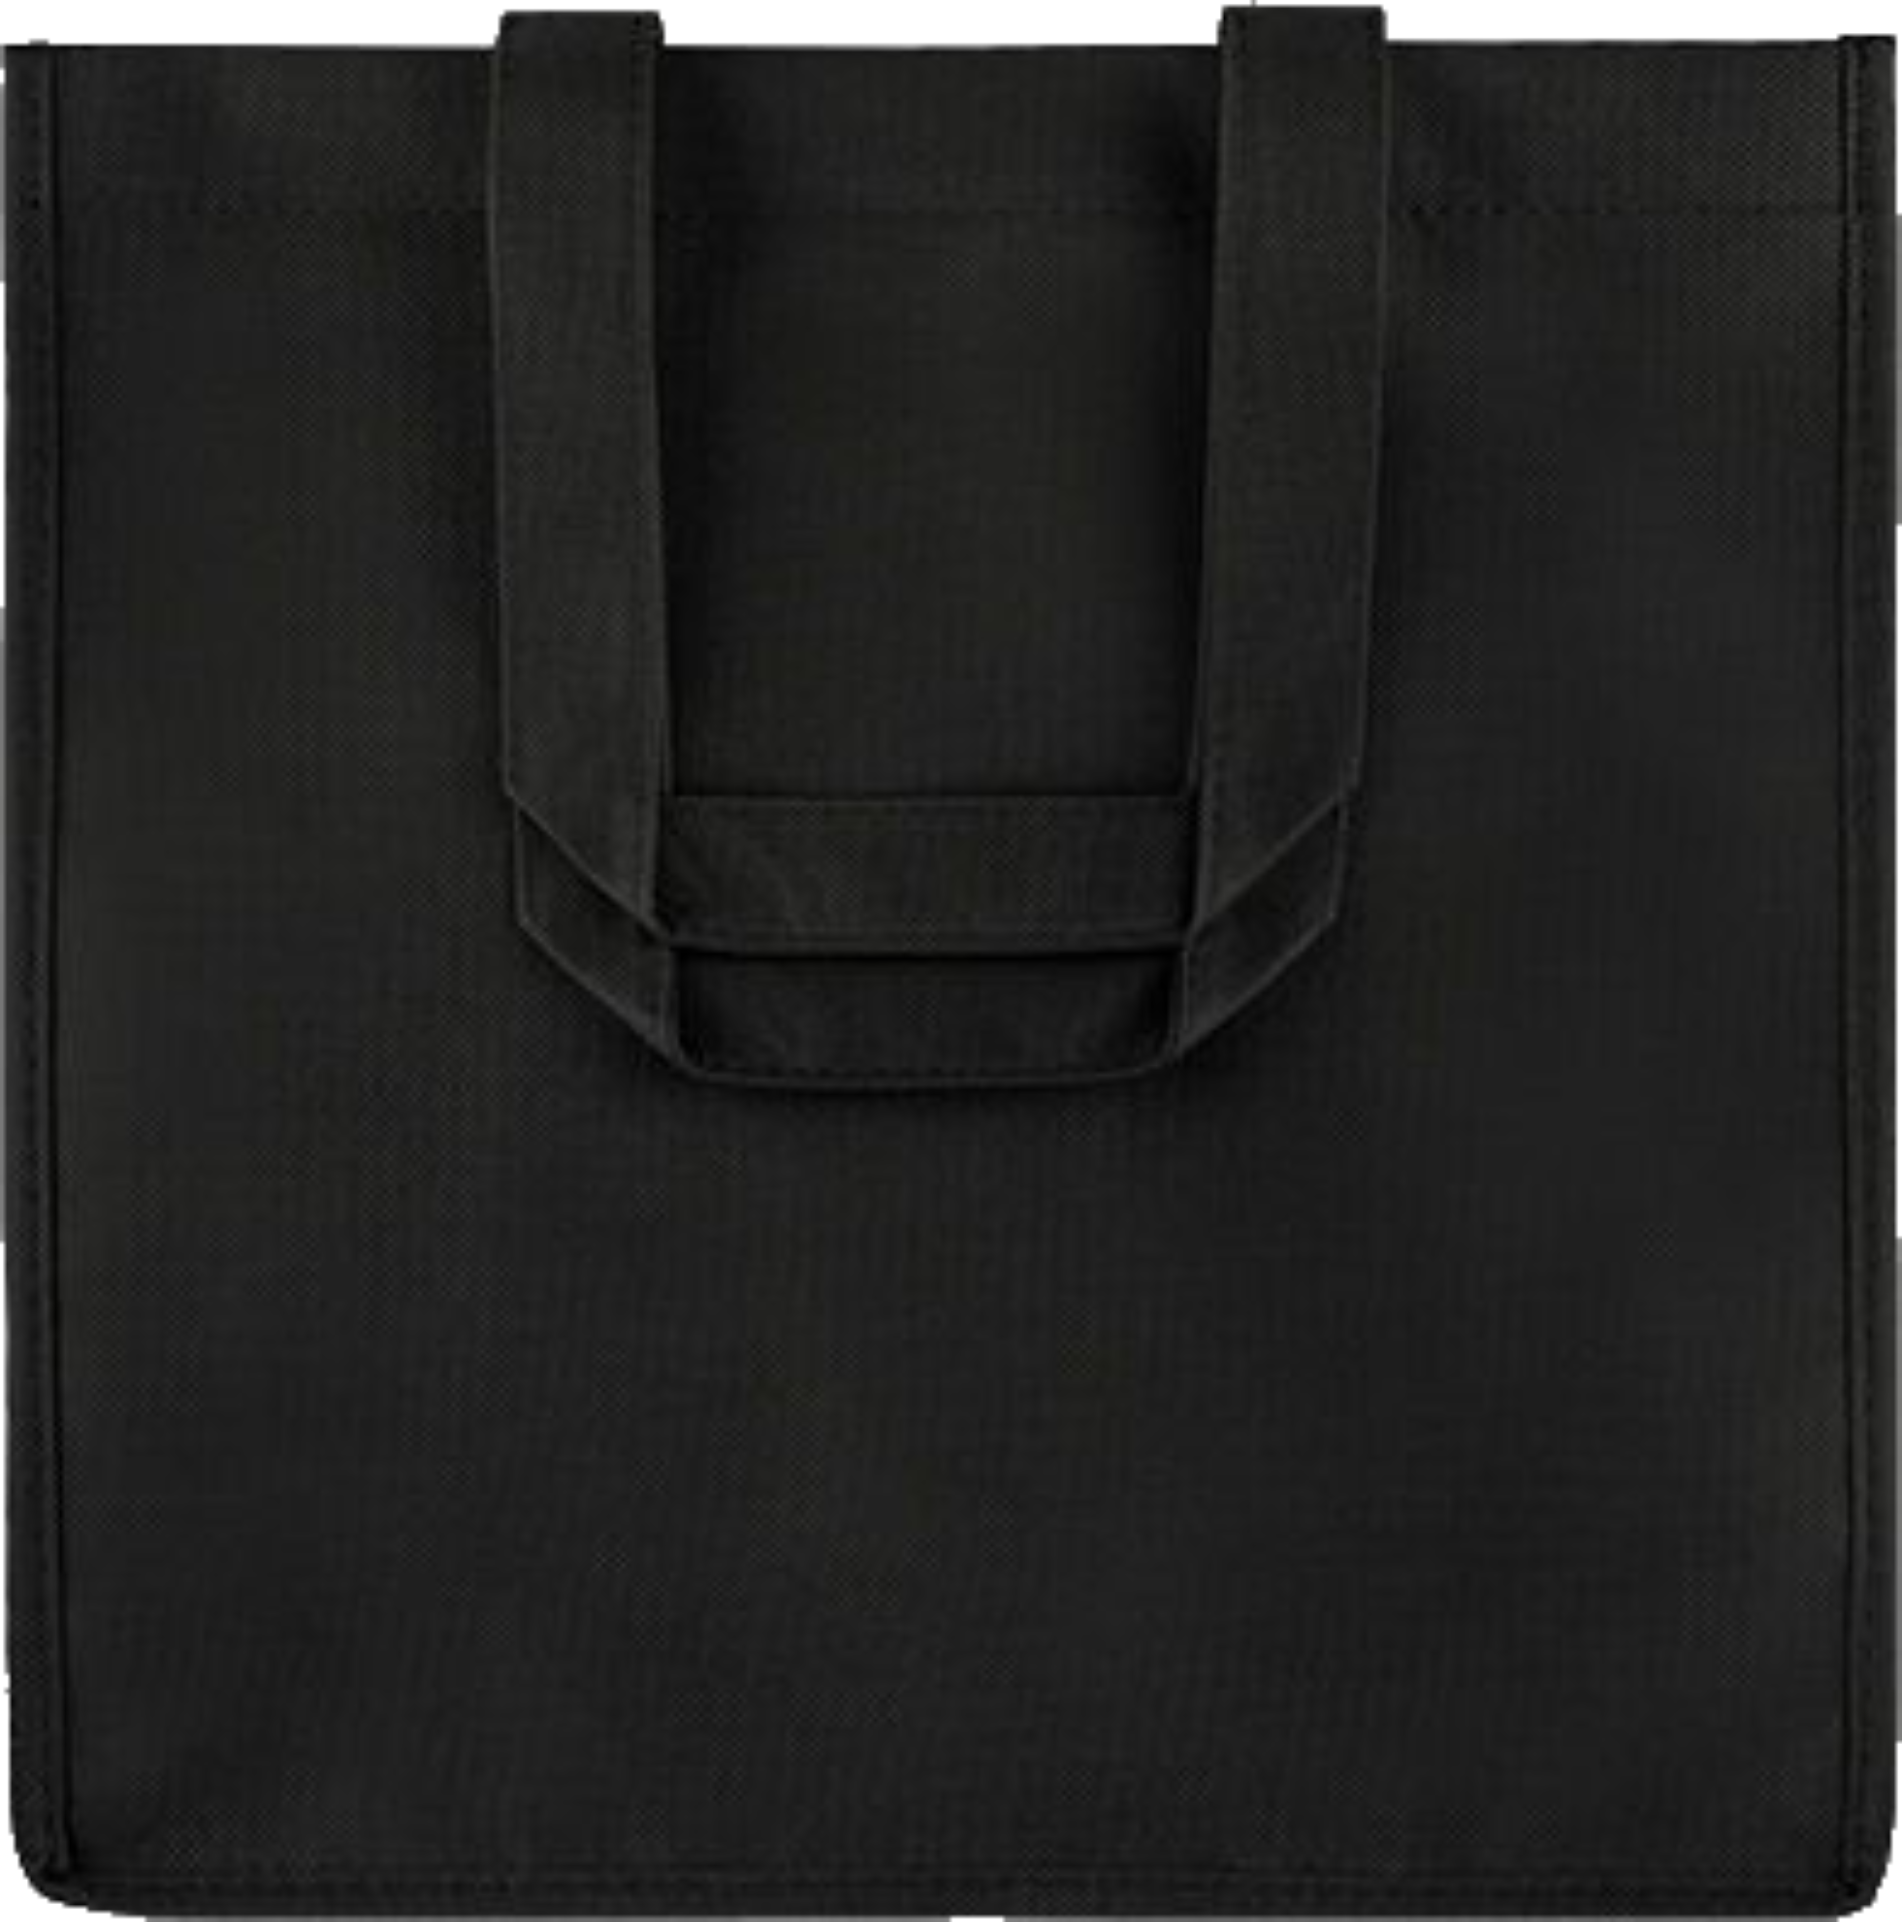 Cloth Tote Bags (Non-Woven)